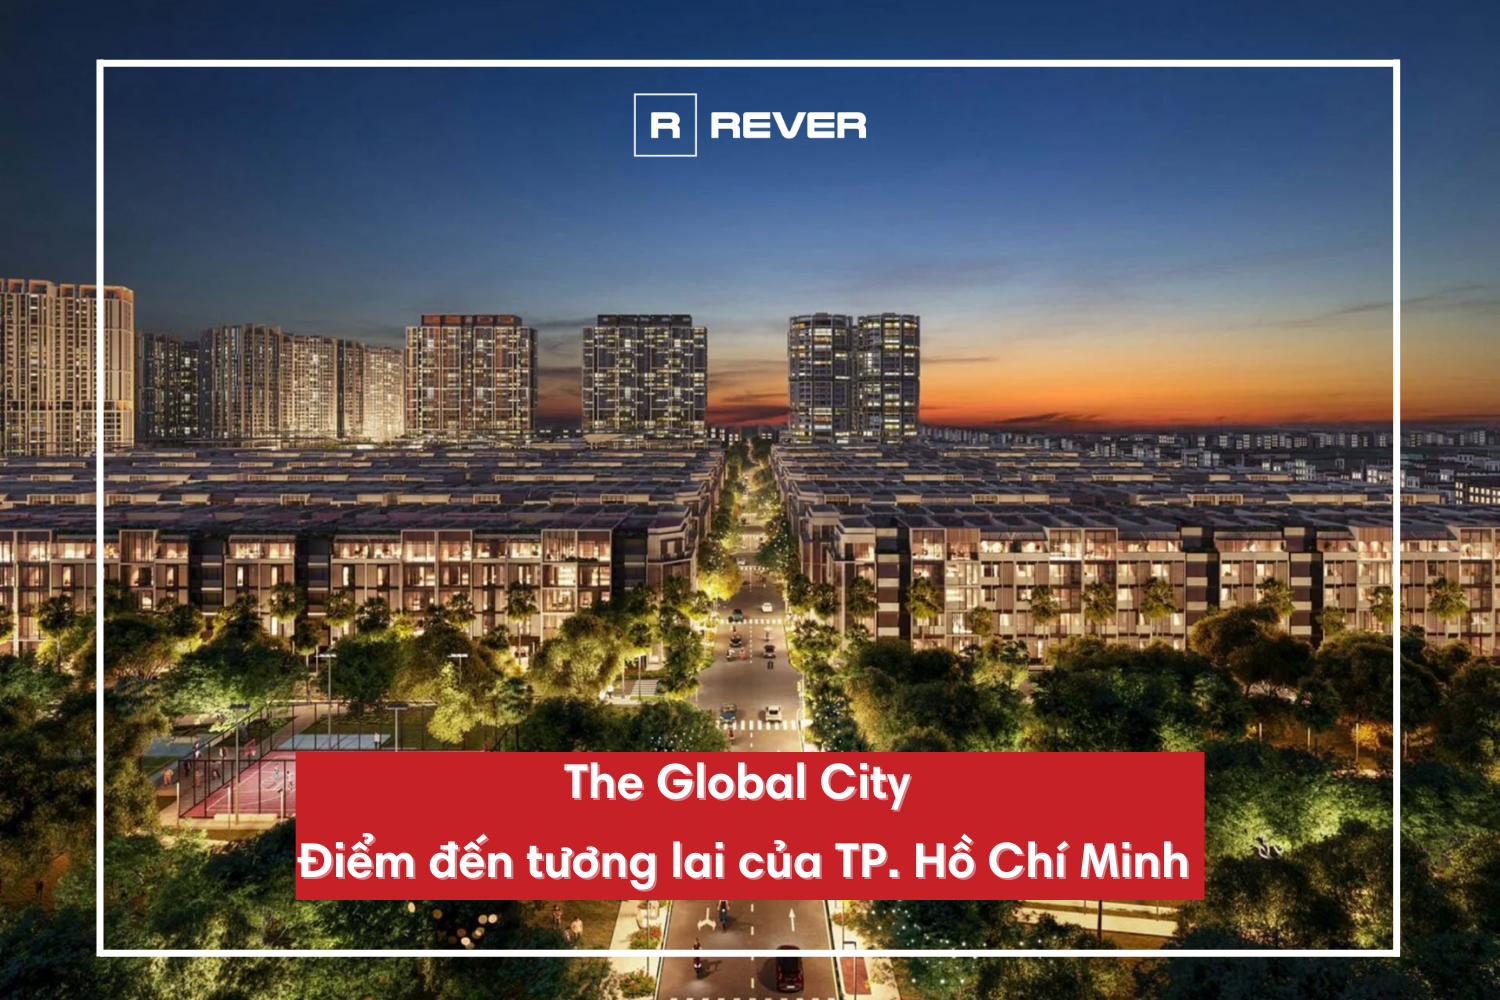 The Global City - Điểm đến tương lai của TP. Hồ Chí Minh